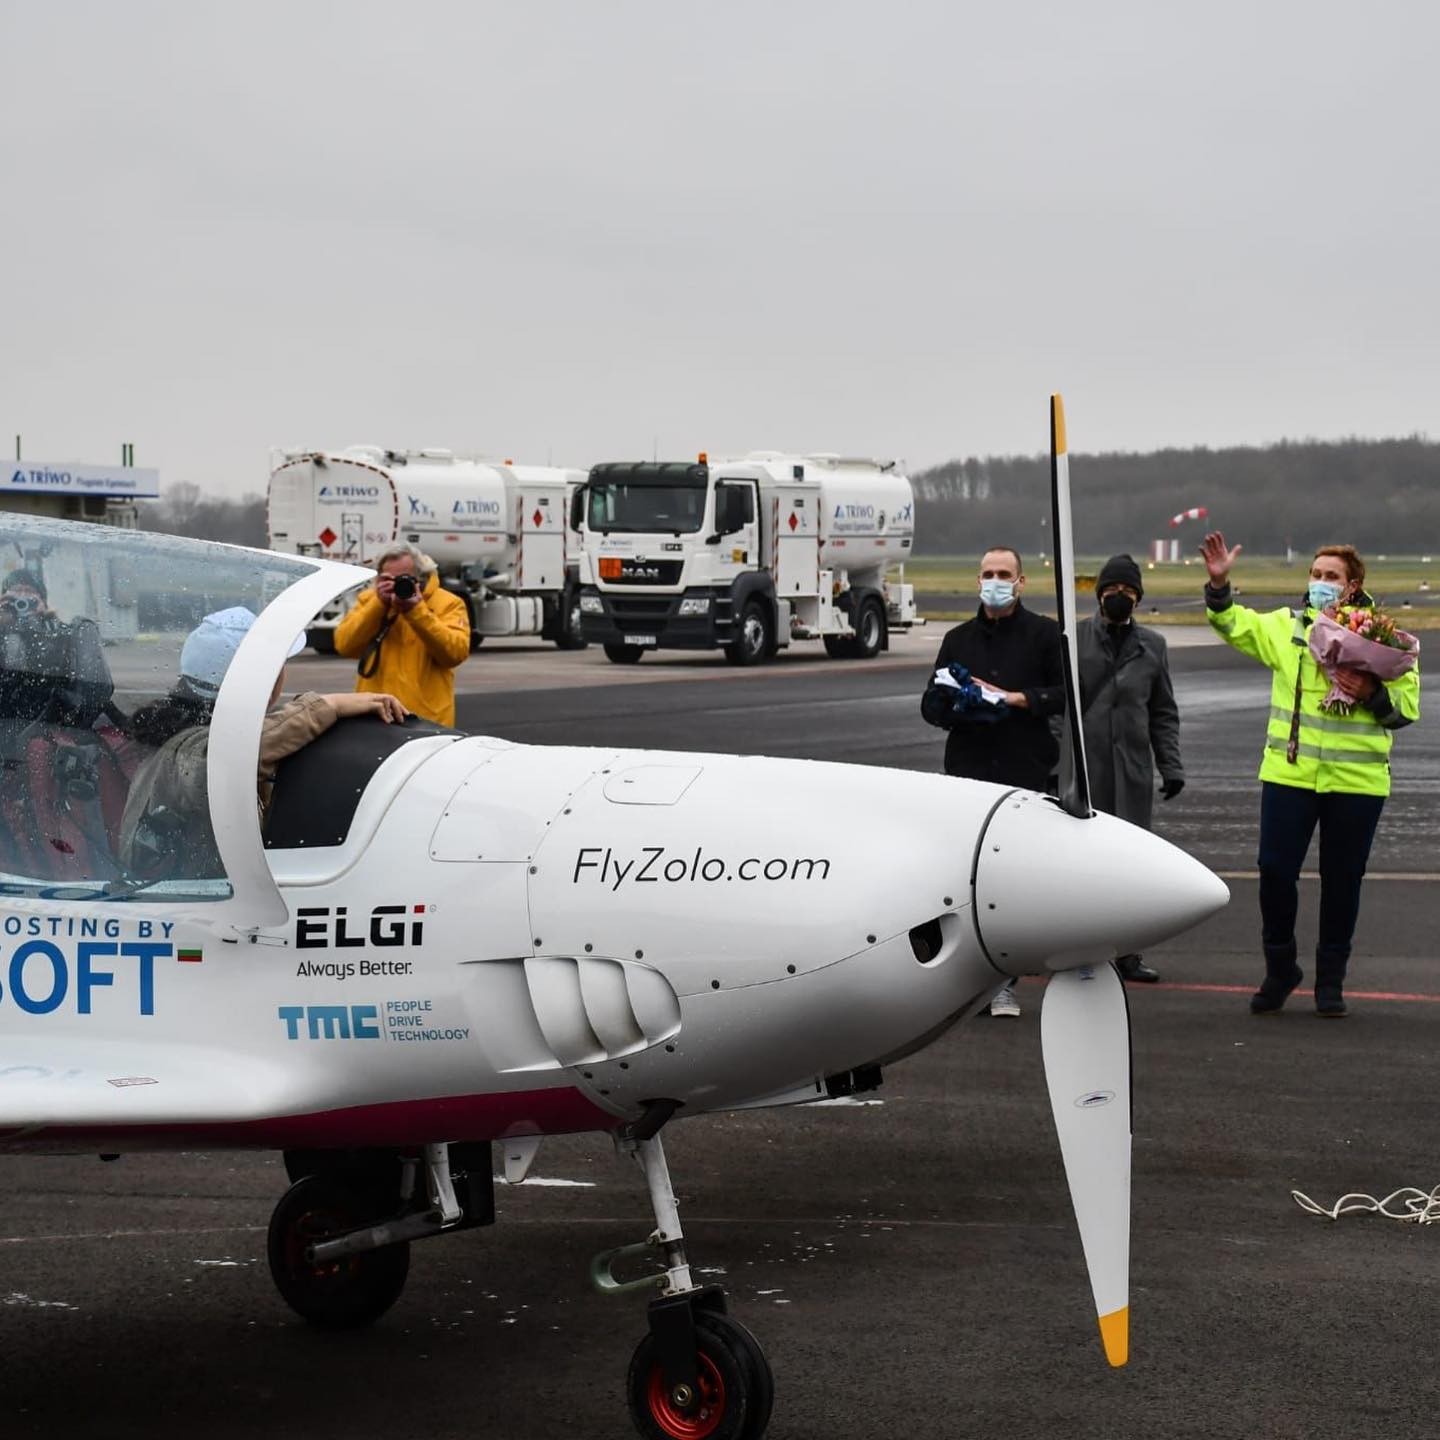 FlyZolo: Povedlo se! Teenagerka sama obletěla svět jakožto nejmladší pilotka v historii